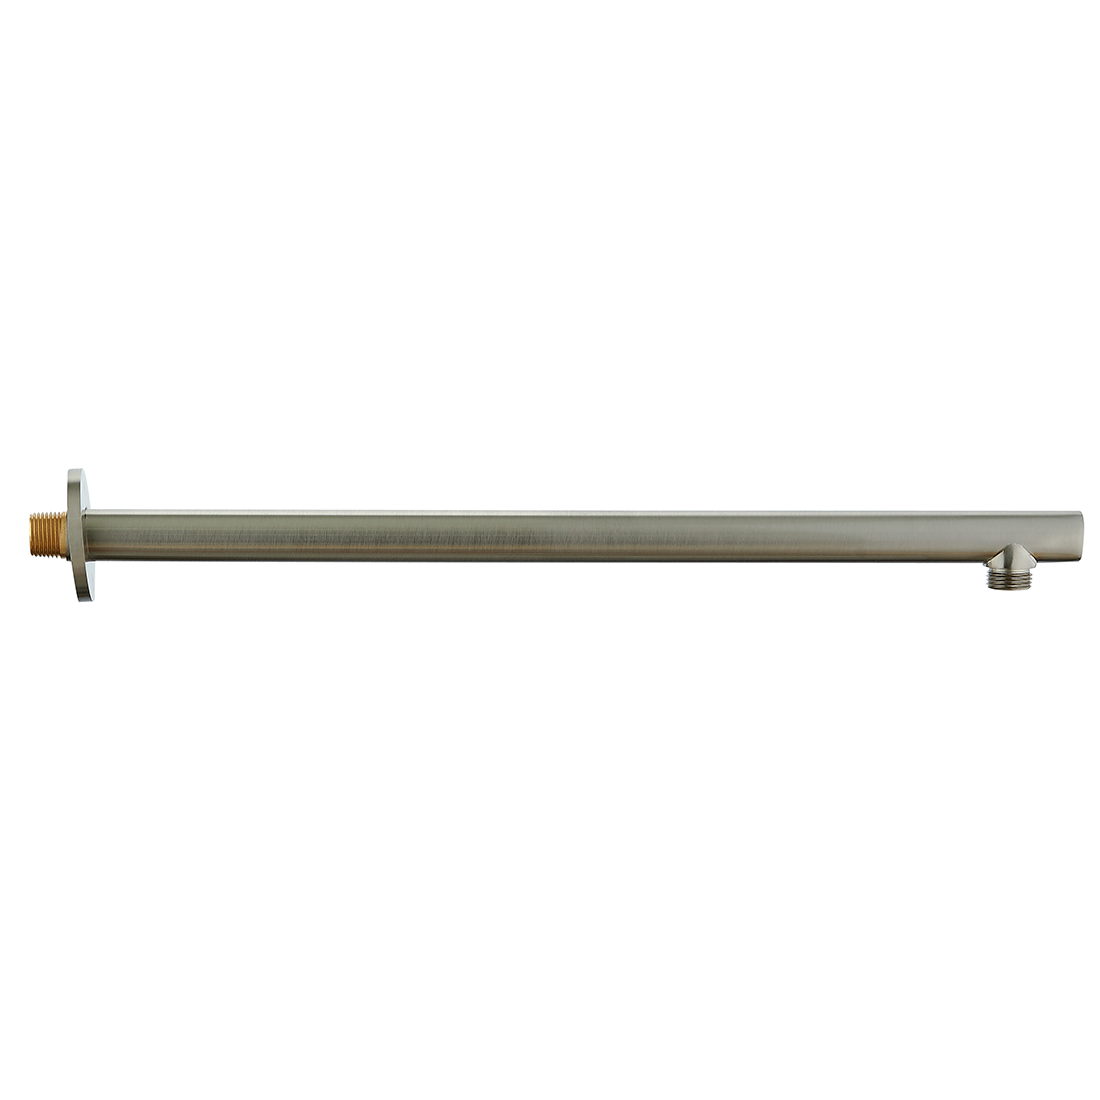 Dax Brass Round Shower Arm 15 Inches Brushed Nickel Finish (DAX-1053-365-BN)